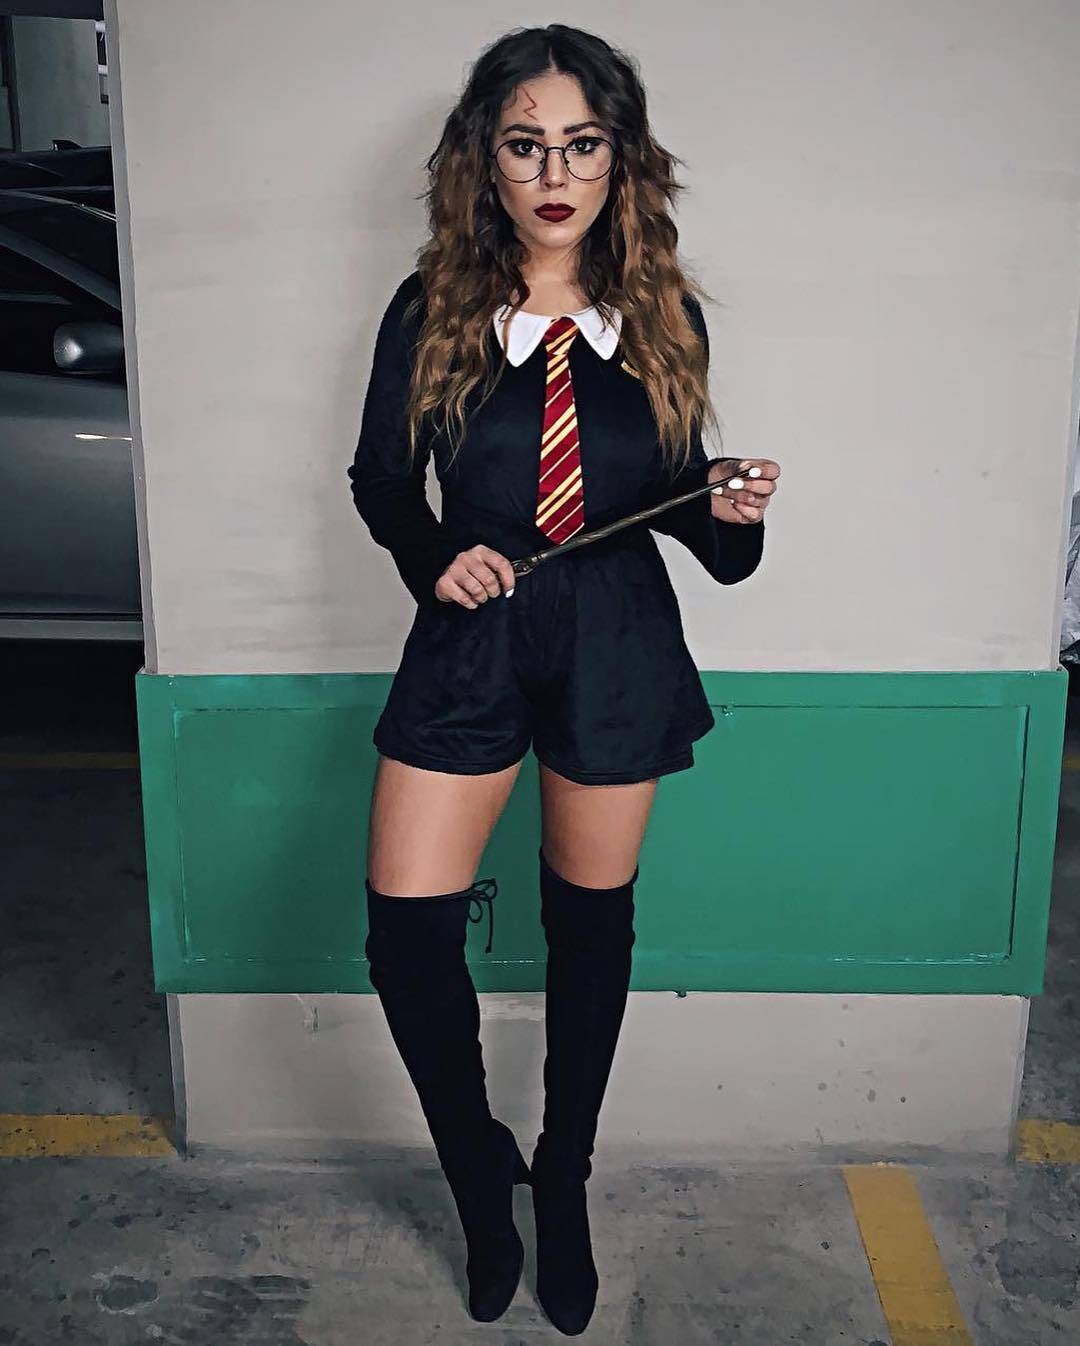 Danna Paola, de "Elite", escolheu homenagear o bruxinho Harry Potter neste Halloween. Foto: Reprodução/Instagram